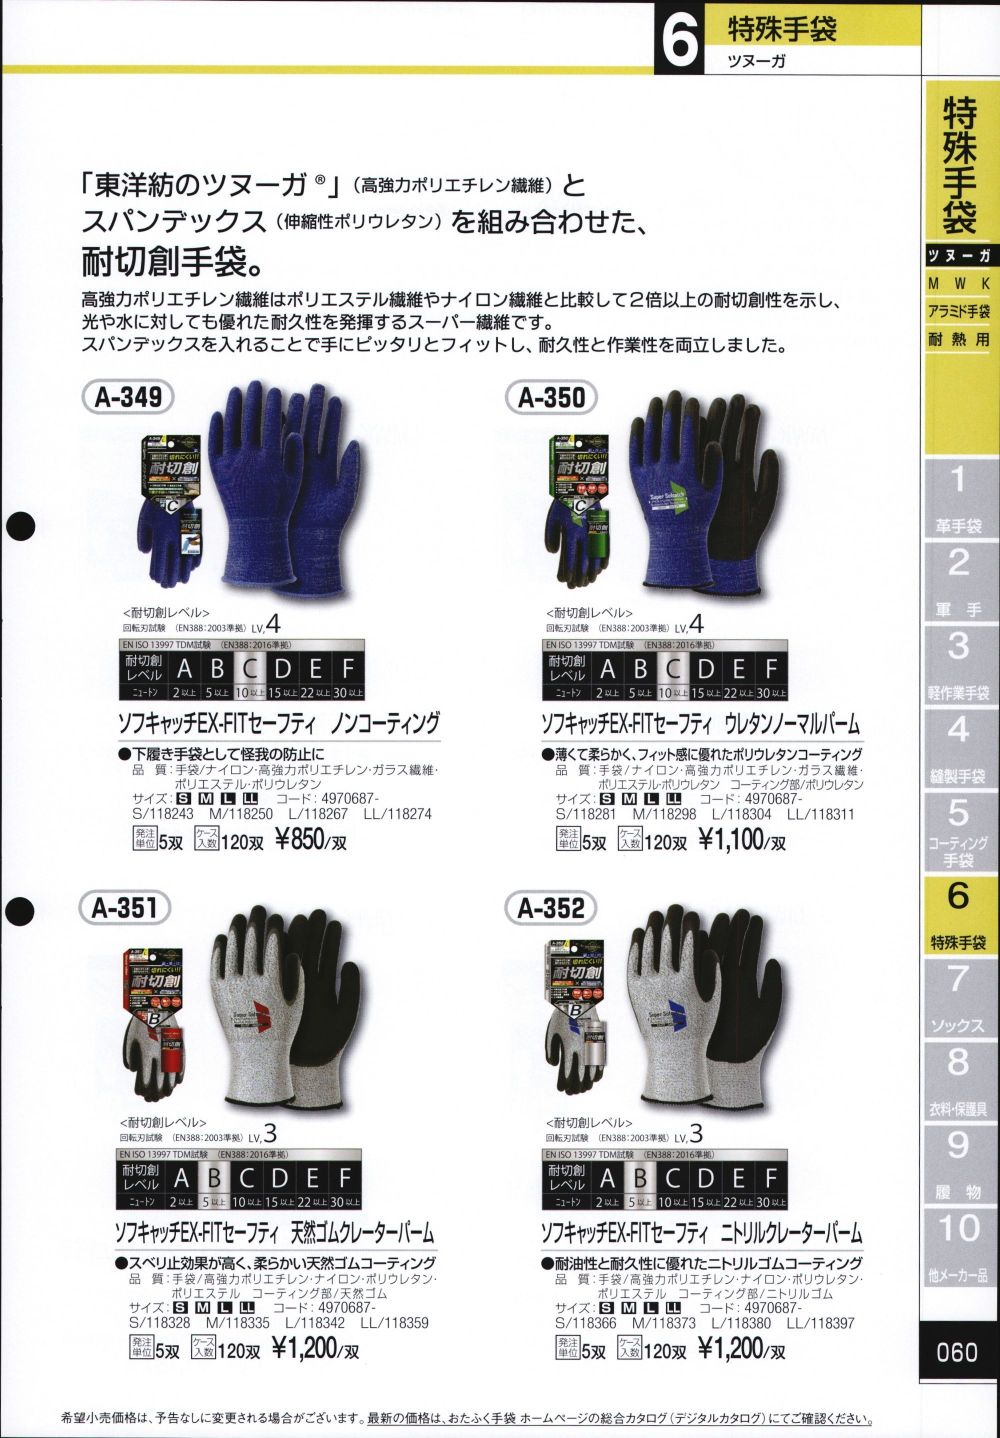 おたふく手袋 ソフキャッチEX-FITセーフティ ウレタンノーマルパーム M ブルー A-350 1個